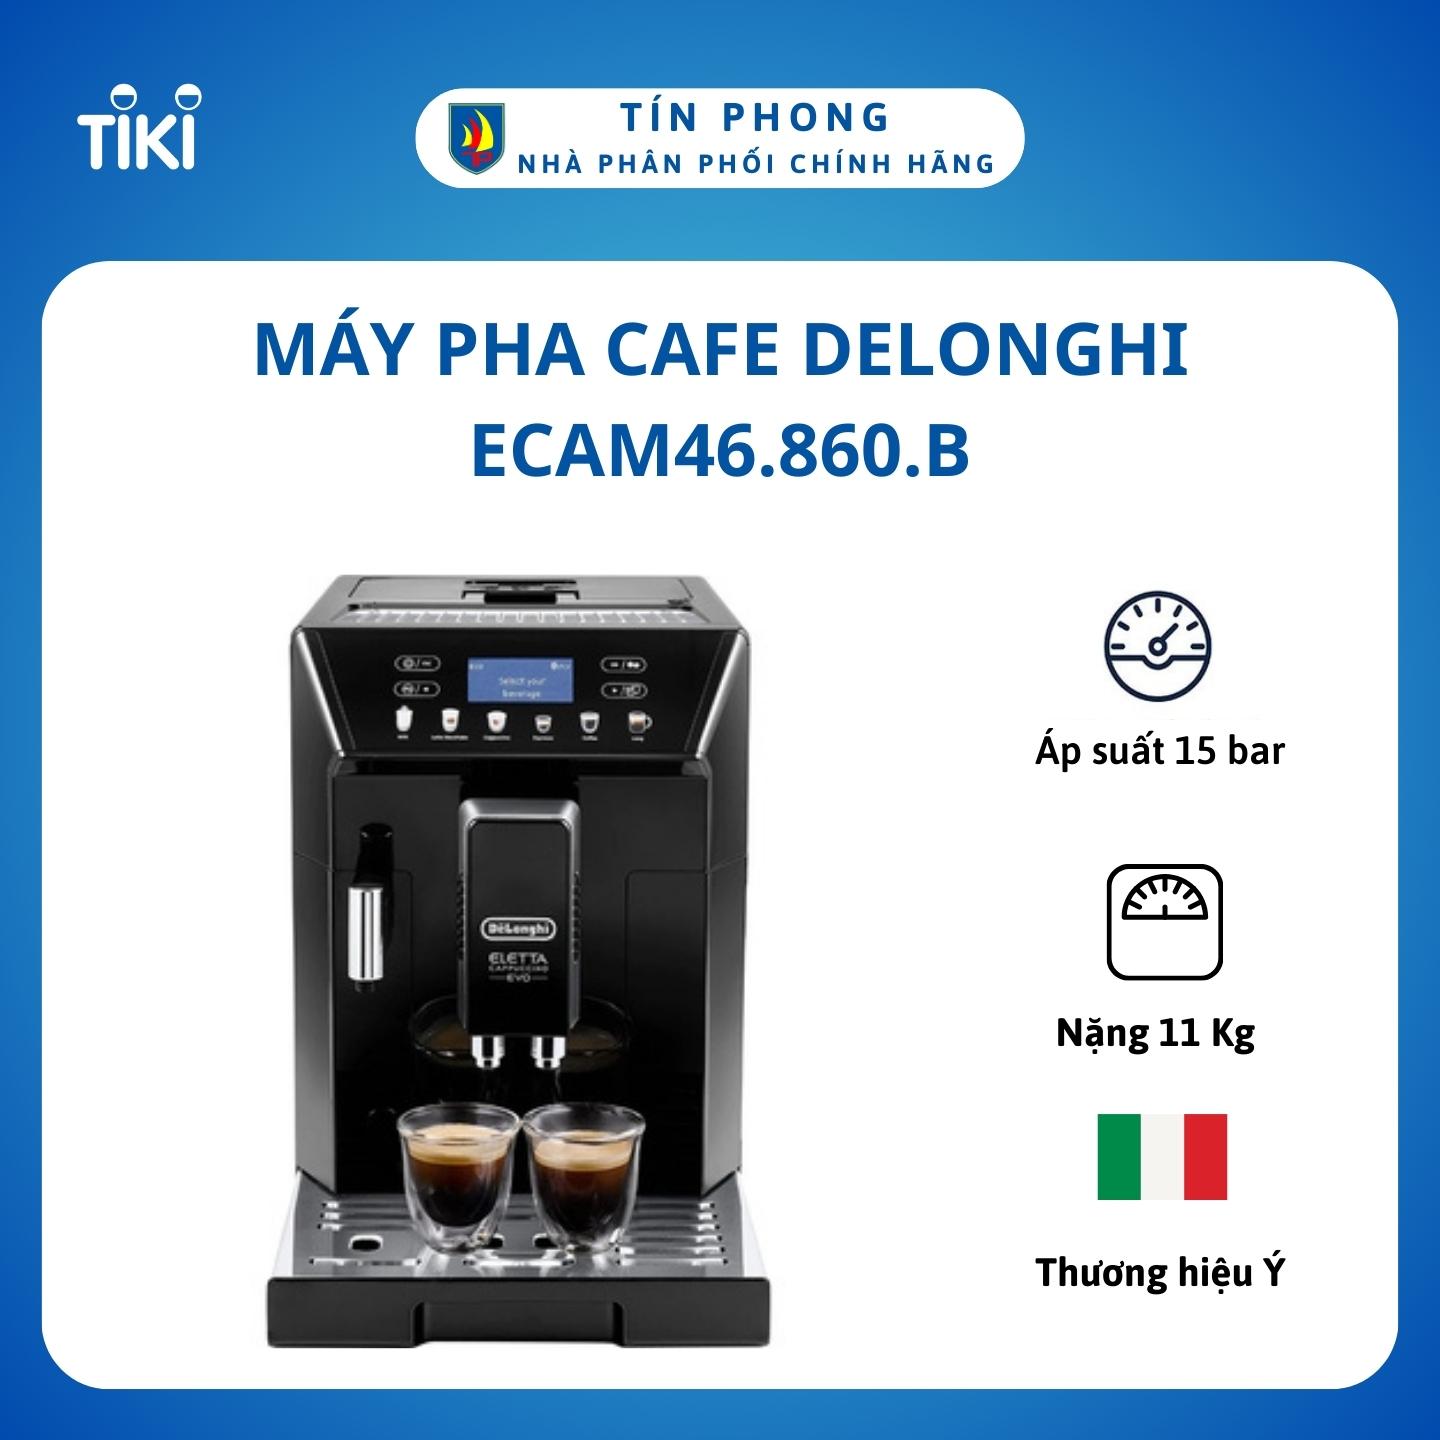 Máy pha cafe Delonghi ECAM46.860.B - Cảm ứng 1 chạm cho từng chế độ - Hệ thống kiểm soát nhiệt độ - Hàng chính hãng